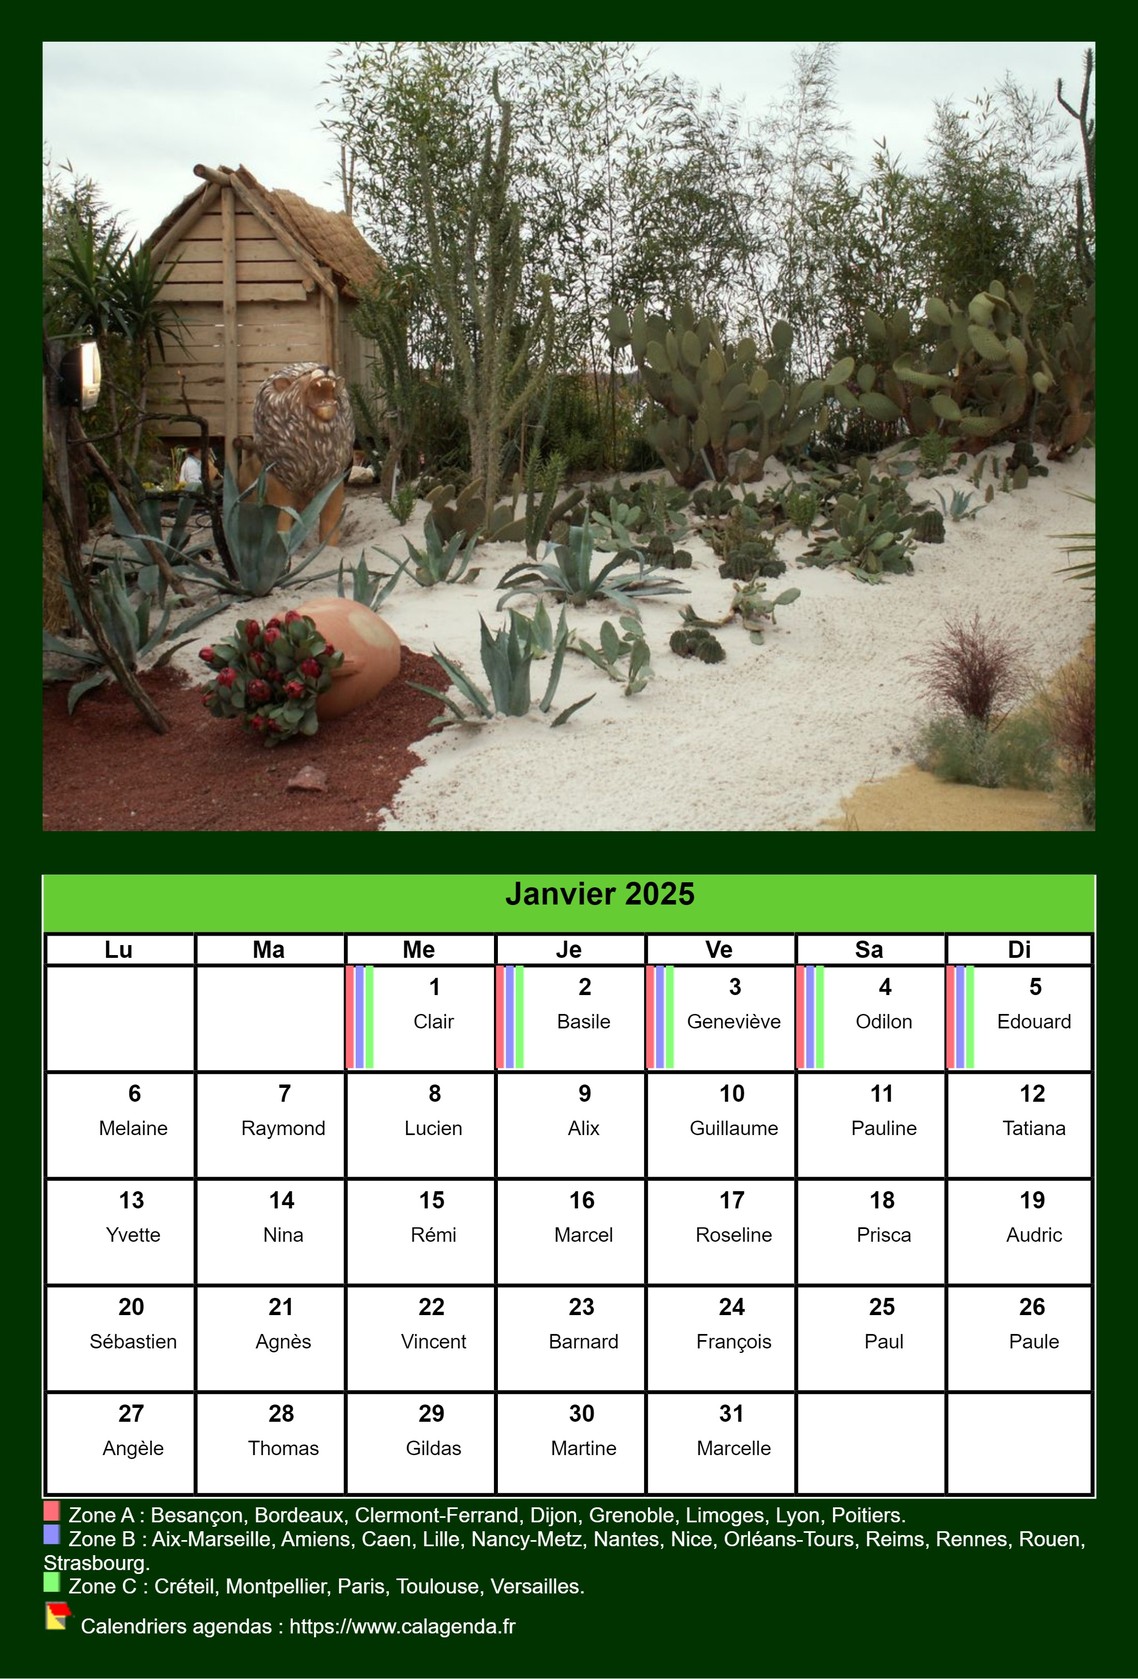 Calendrier mensuel 2025 avec une photo différente chaque mois